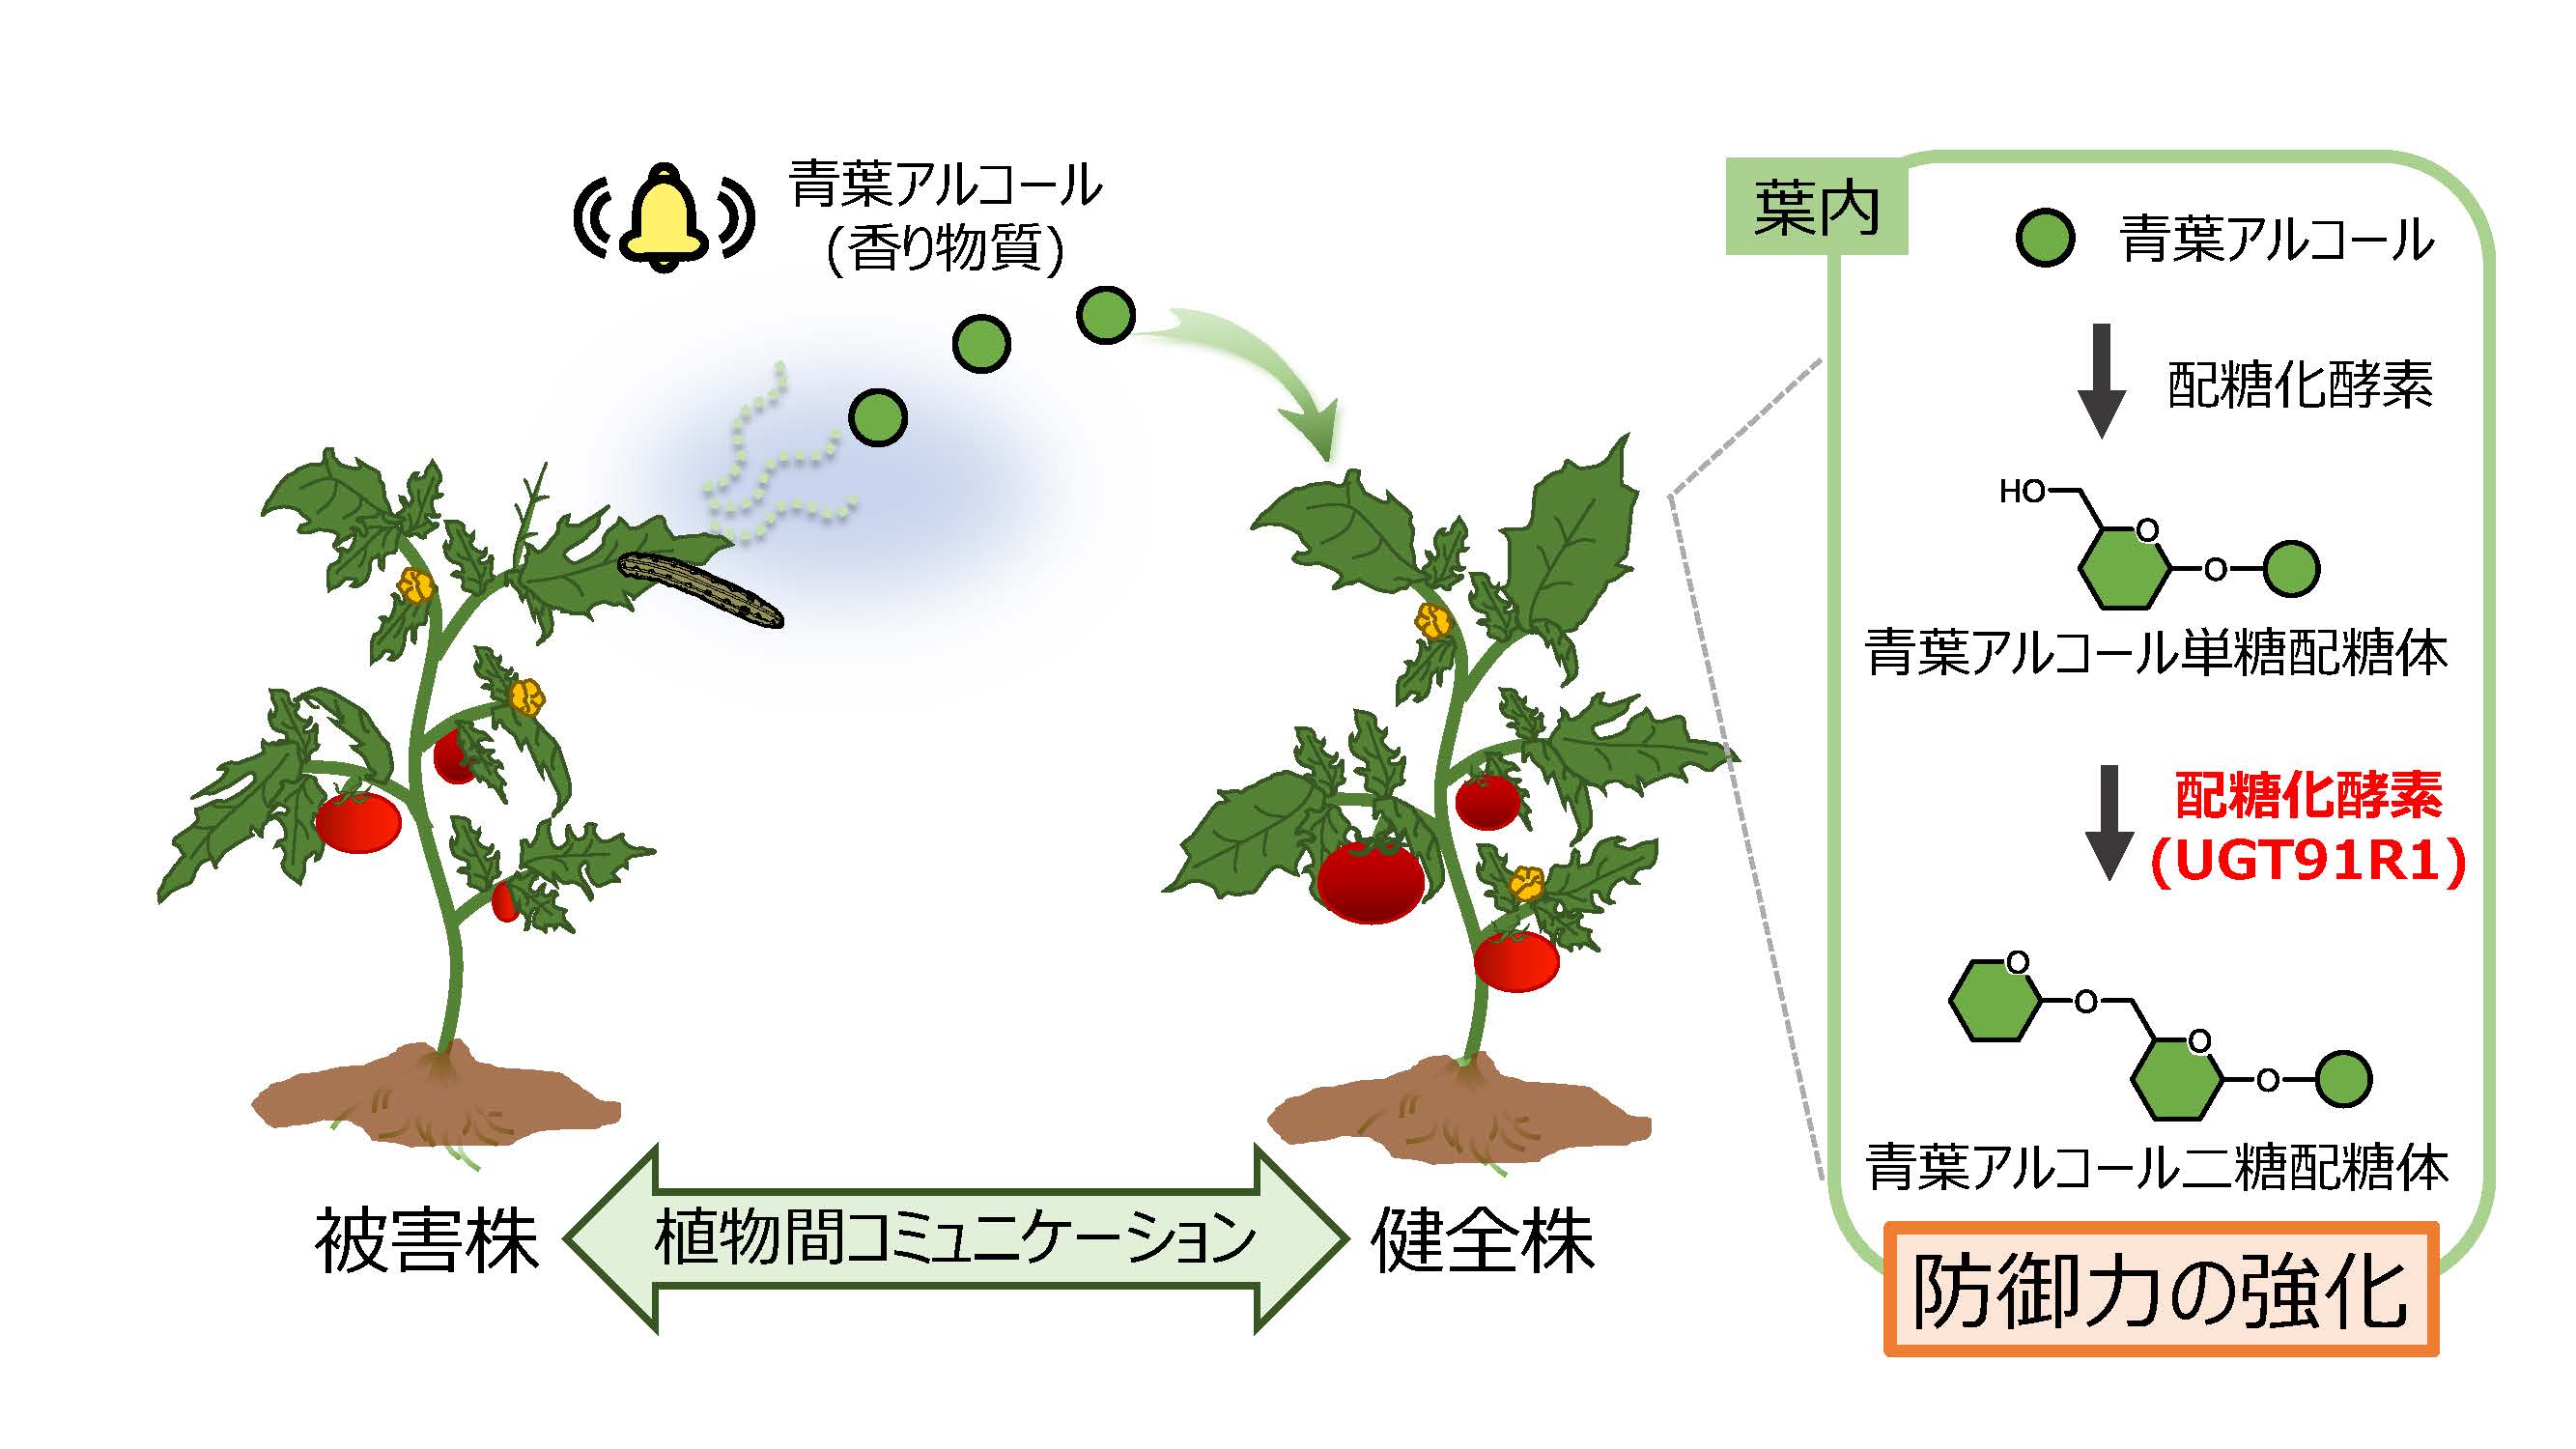 【プレスリリース】植物間コミュニケーションによって，植物が将来起こり得る被害から身を守る仕組みを解明